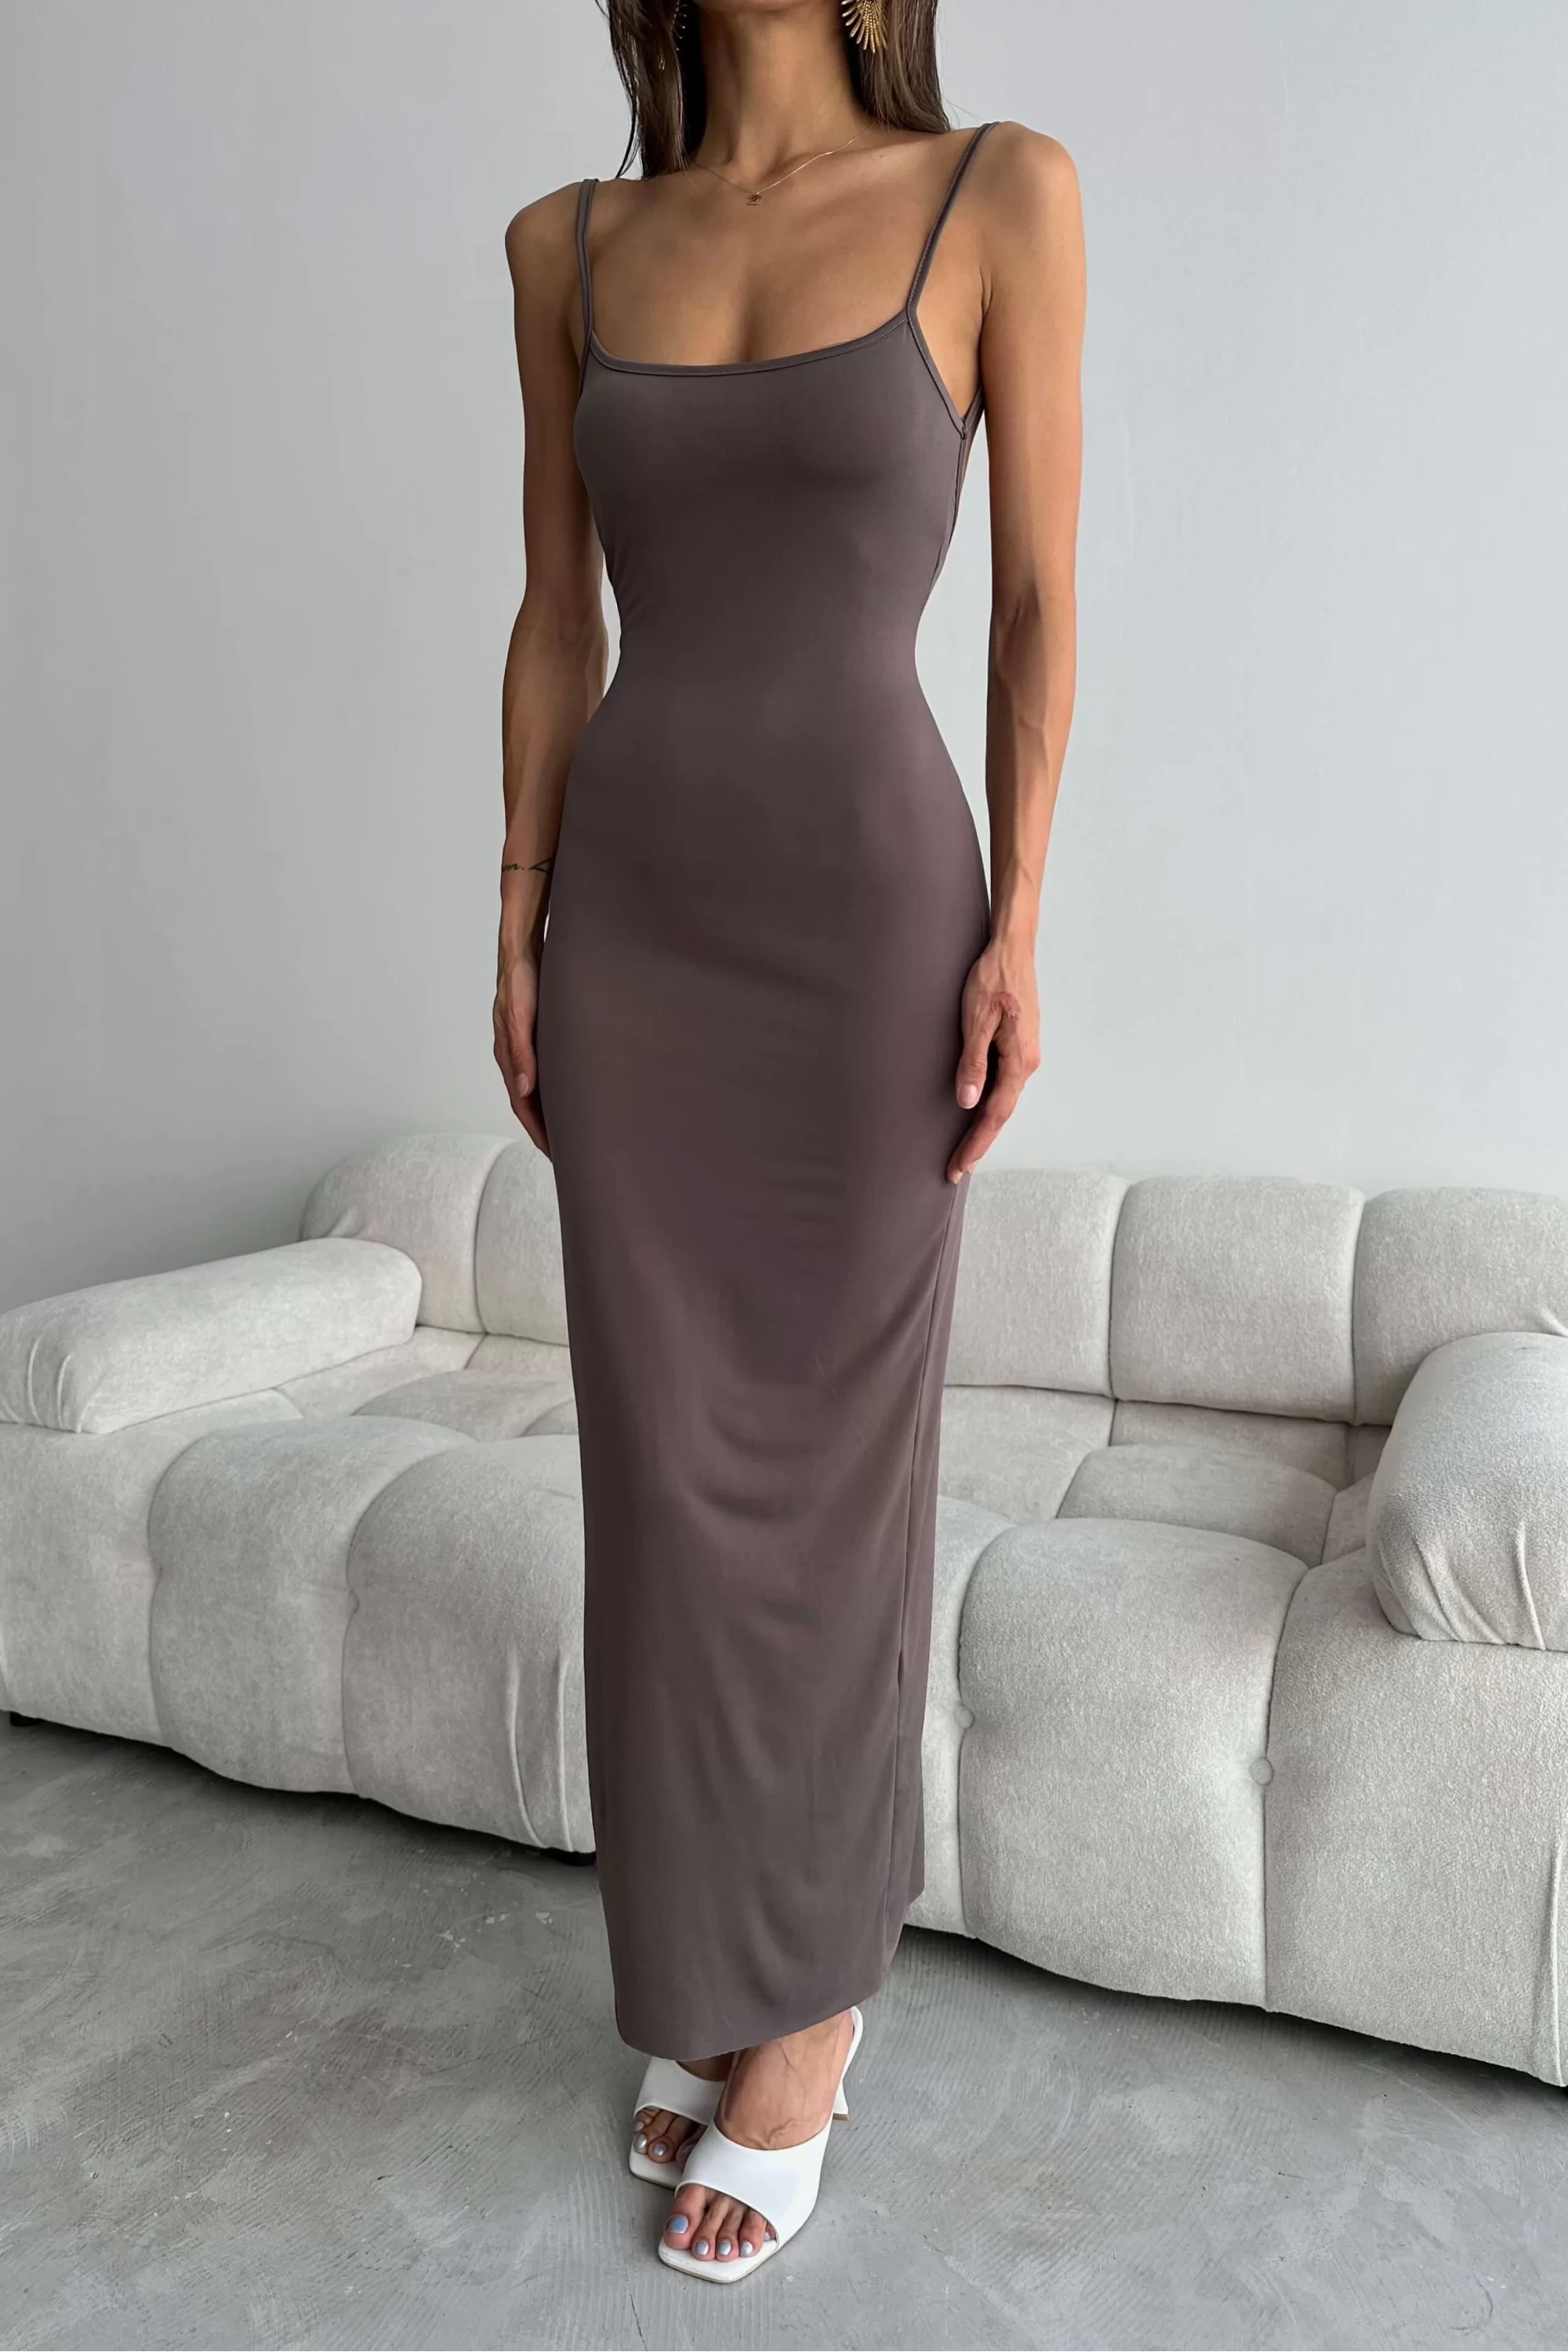 Kadın Vizon Sırtı Açık Elbise 1018-0314